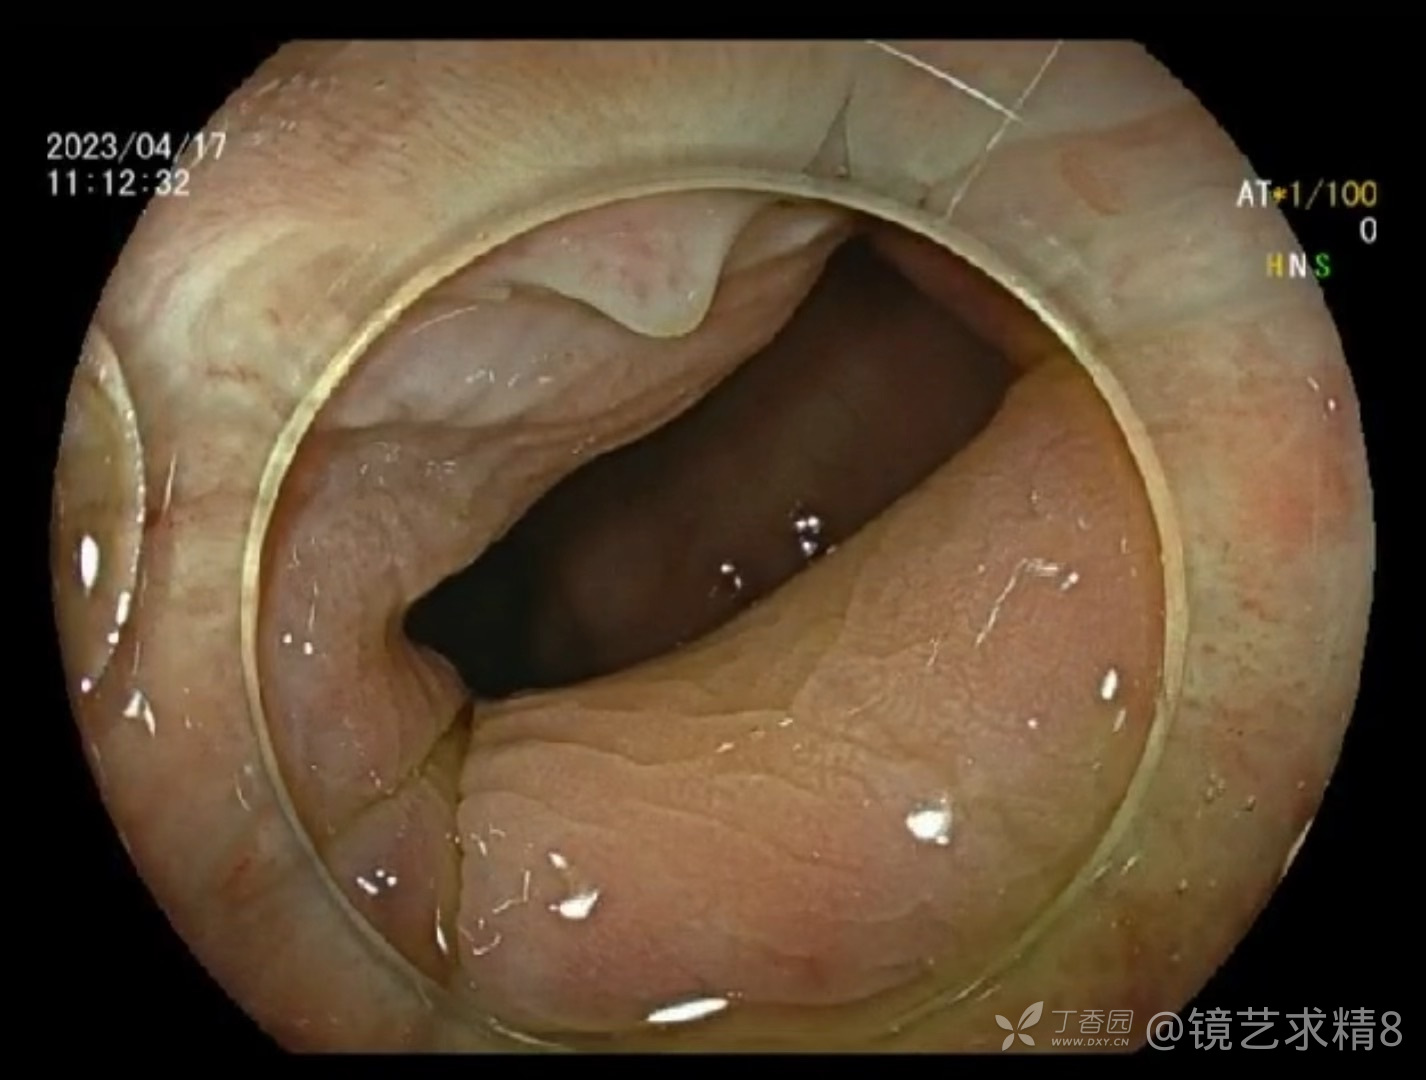 肠镜检查从肛门到回盲部28秒视角